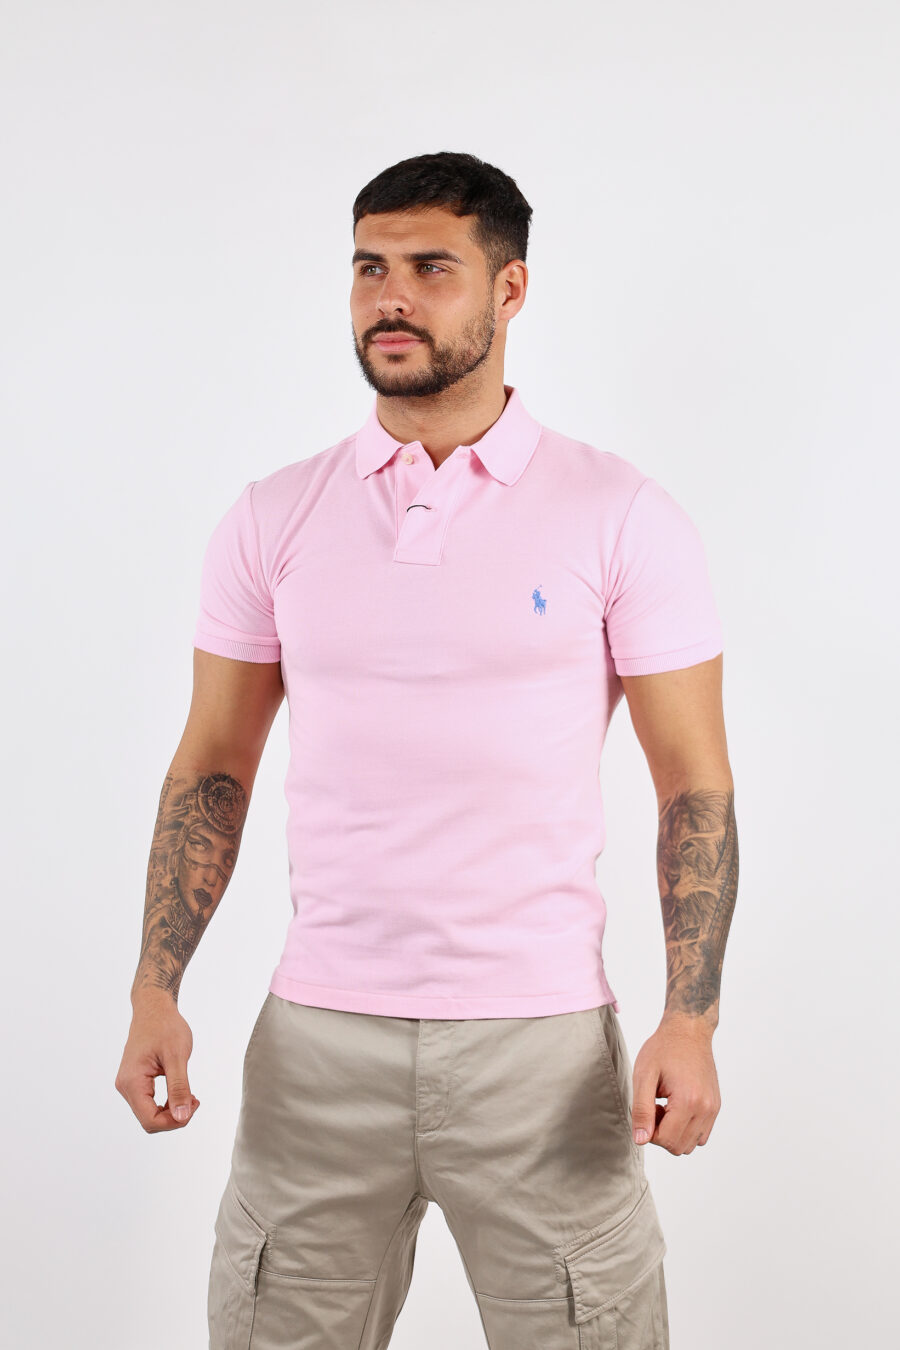 Pólo cor-de-rosa com mini-logotipo "polo" - BLS Fashion 160